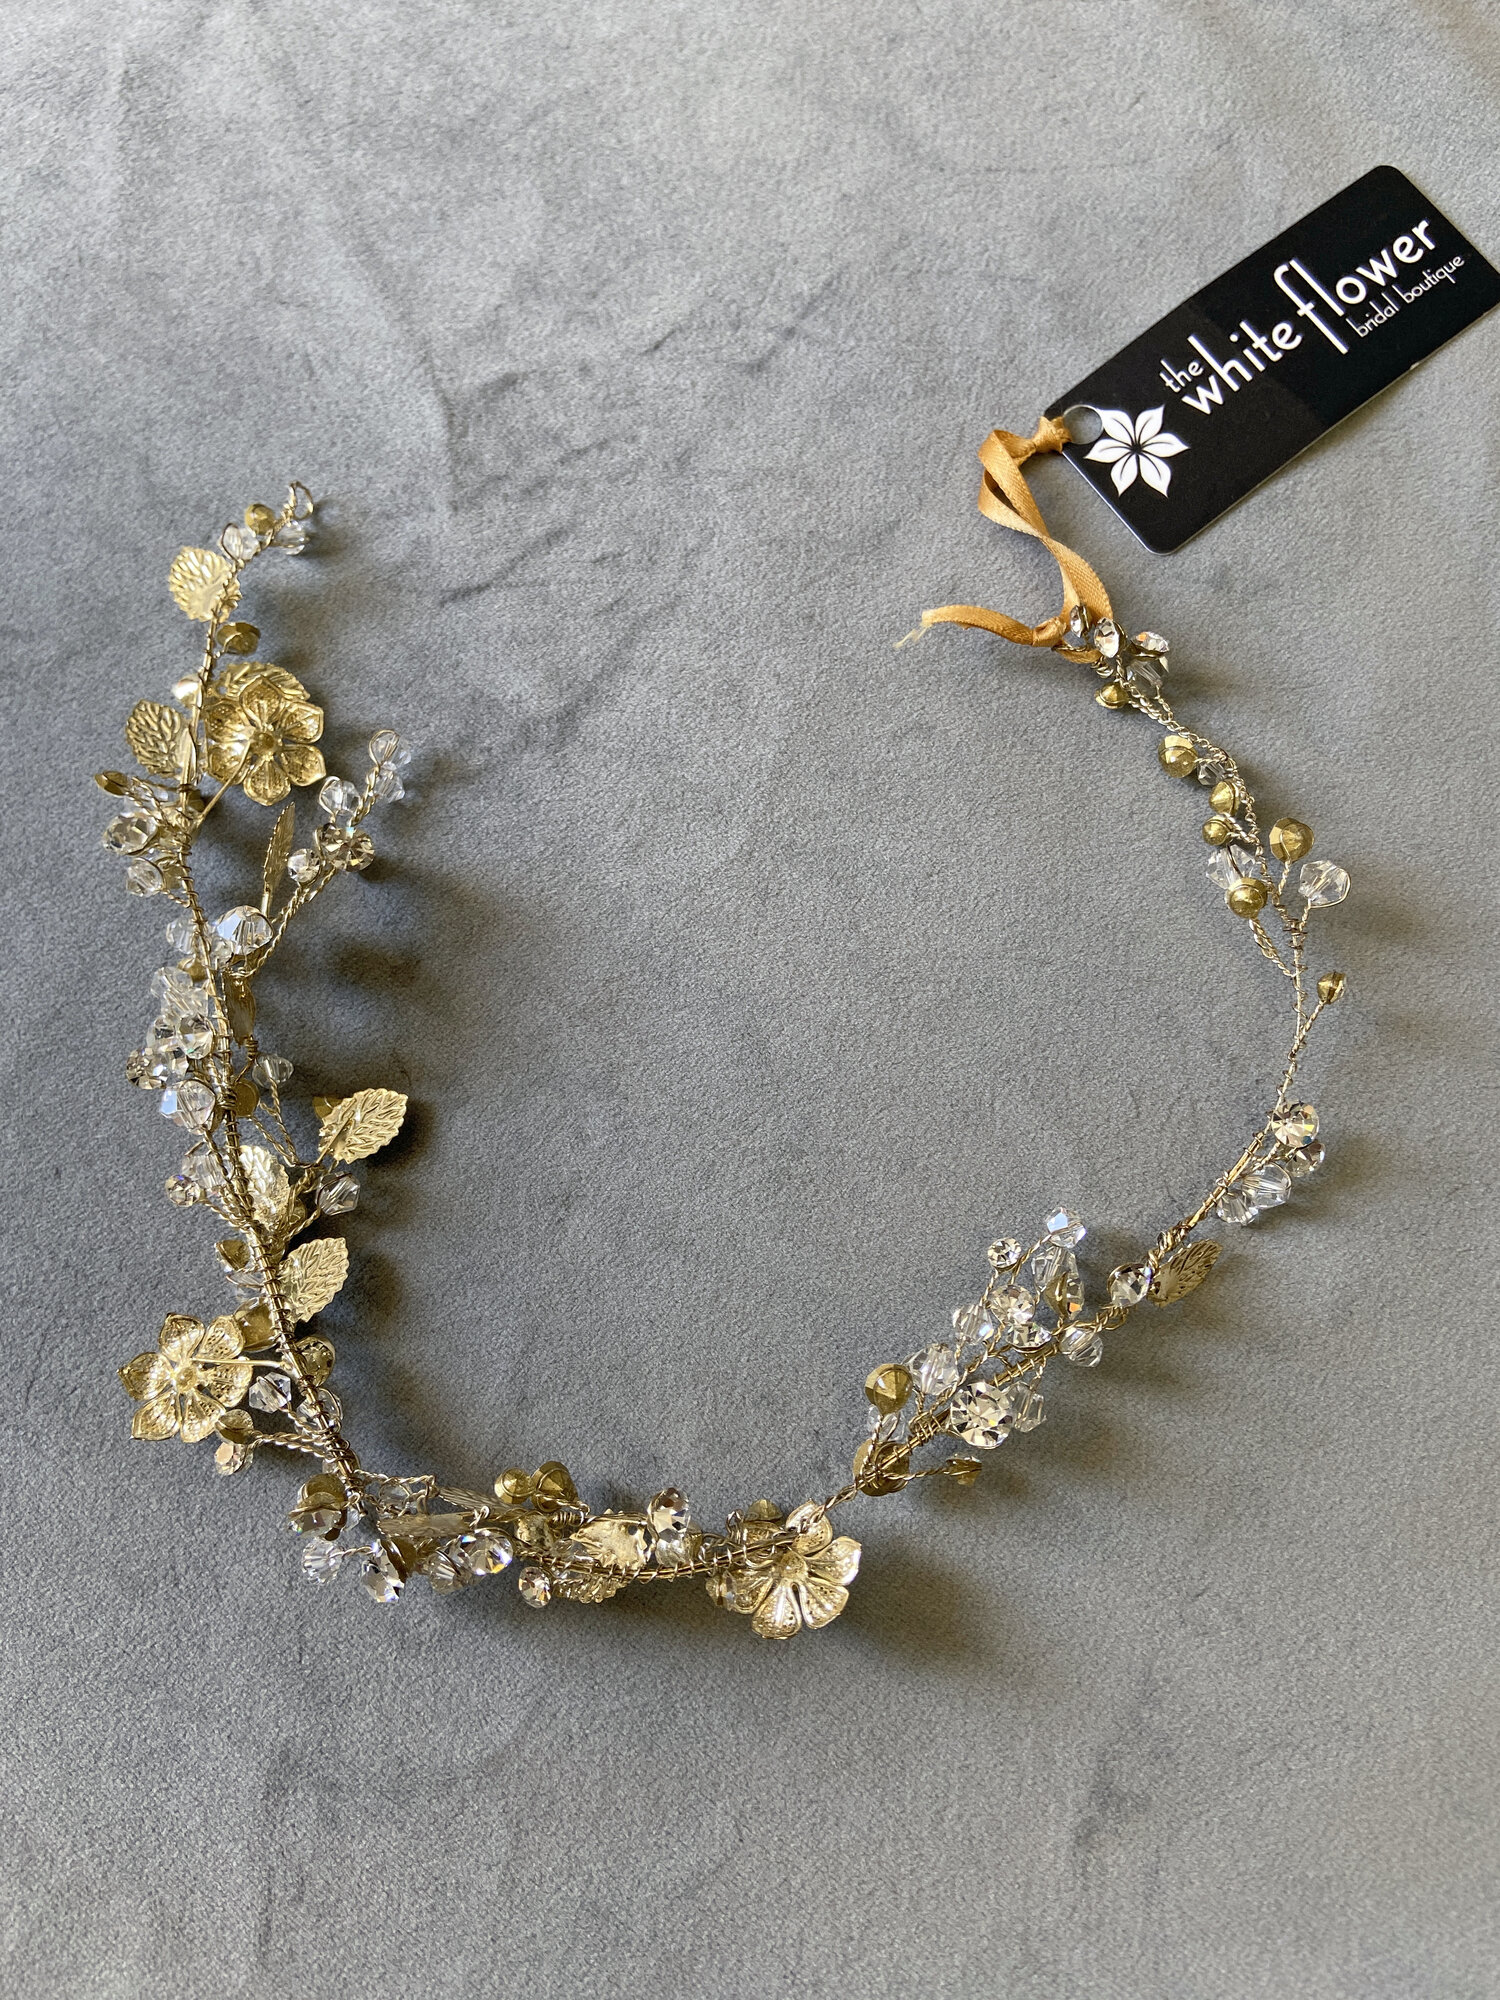 Gold Ocean Confetti Hair Vine - Bridal Accessories - The White Flower - San  Diego, CA